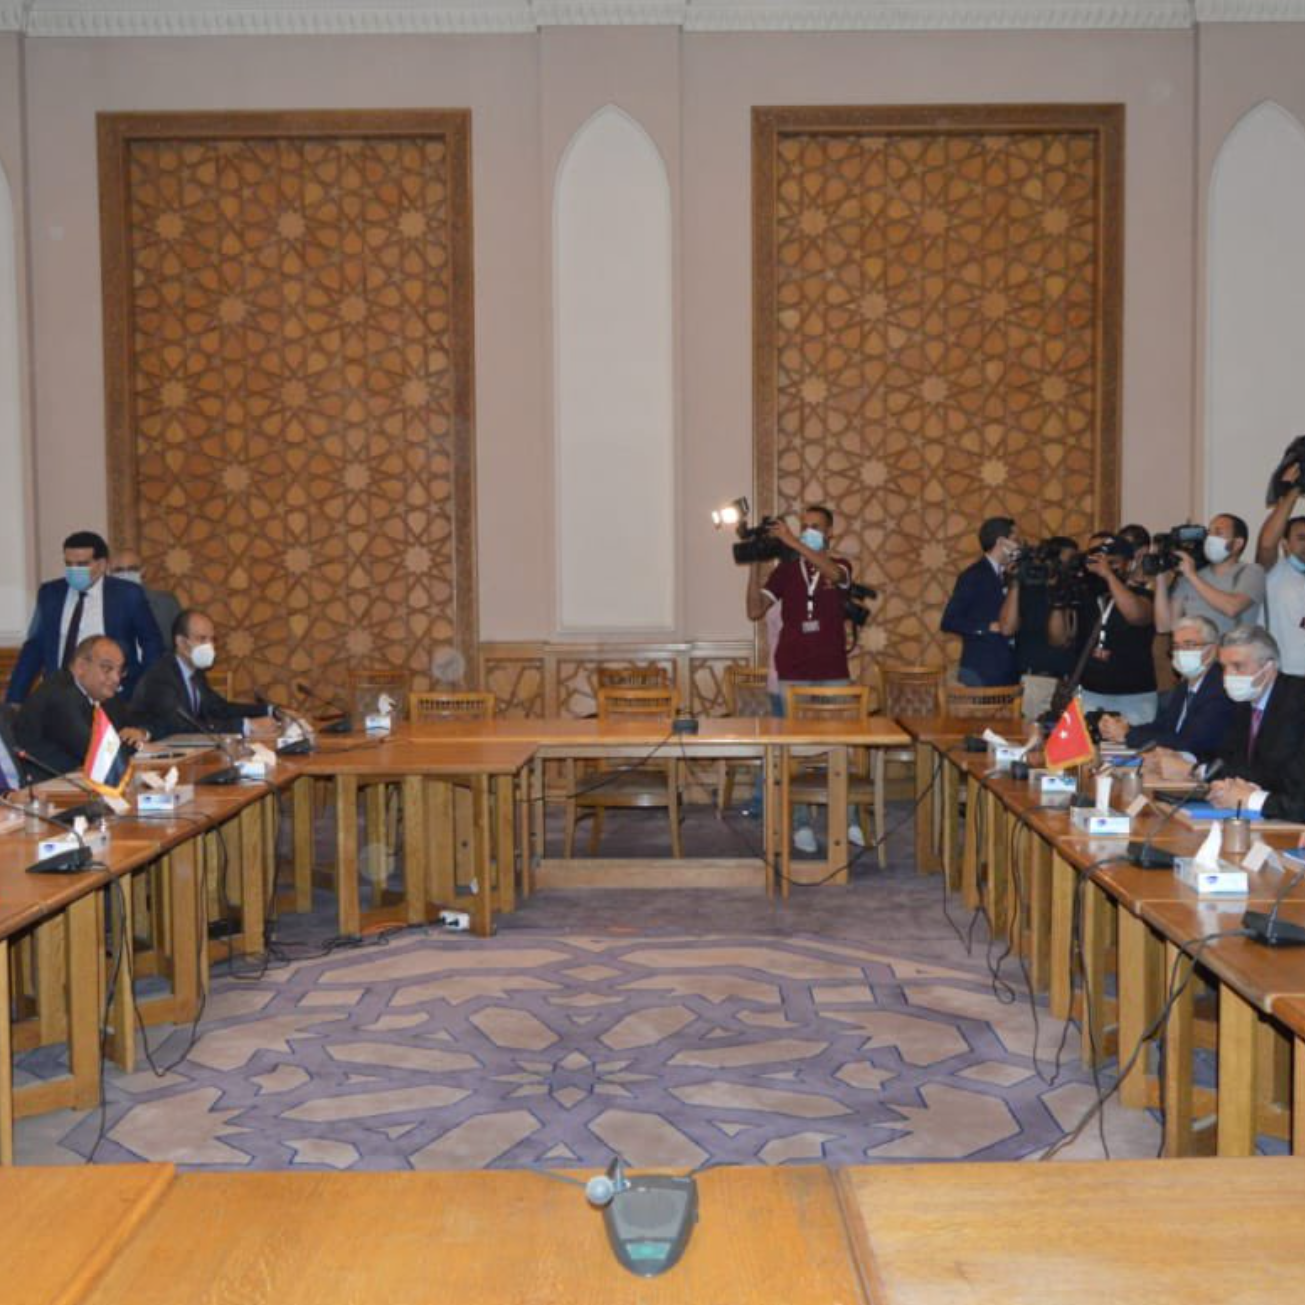 انطلاق المشاورات بين مصر وتركيا.. صور من أول اجتماع